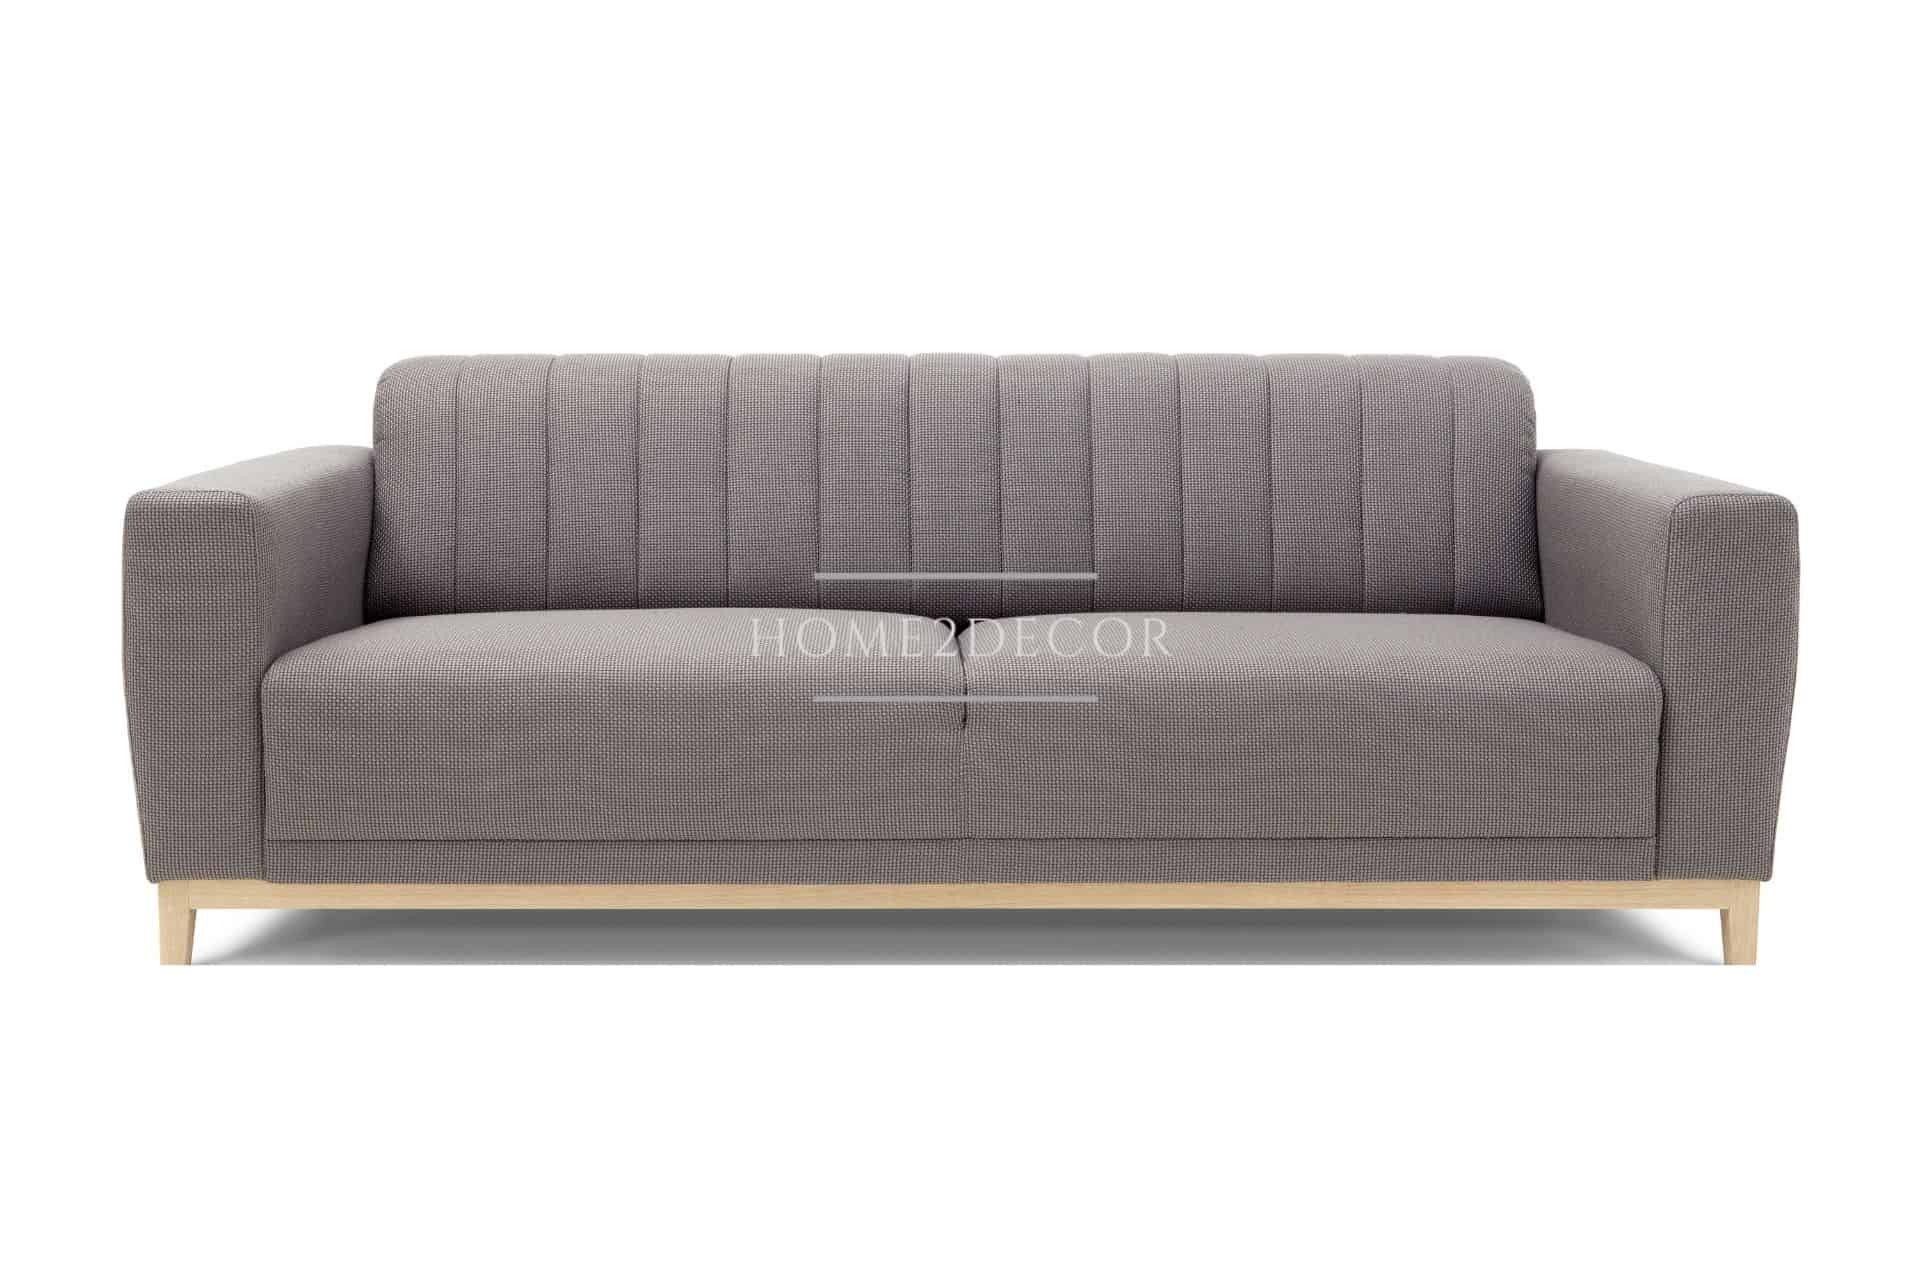 Super-Retro beige modern Sofa MODEL CONCEPT